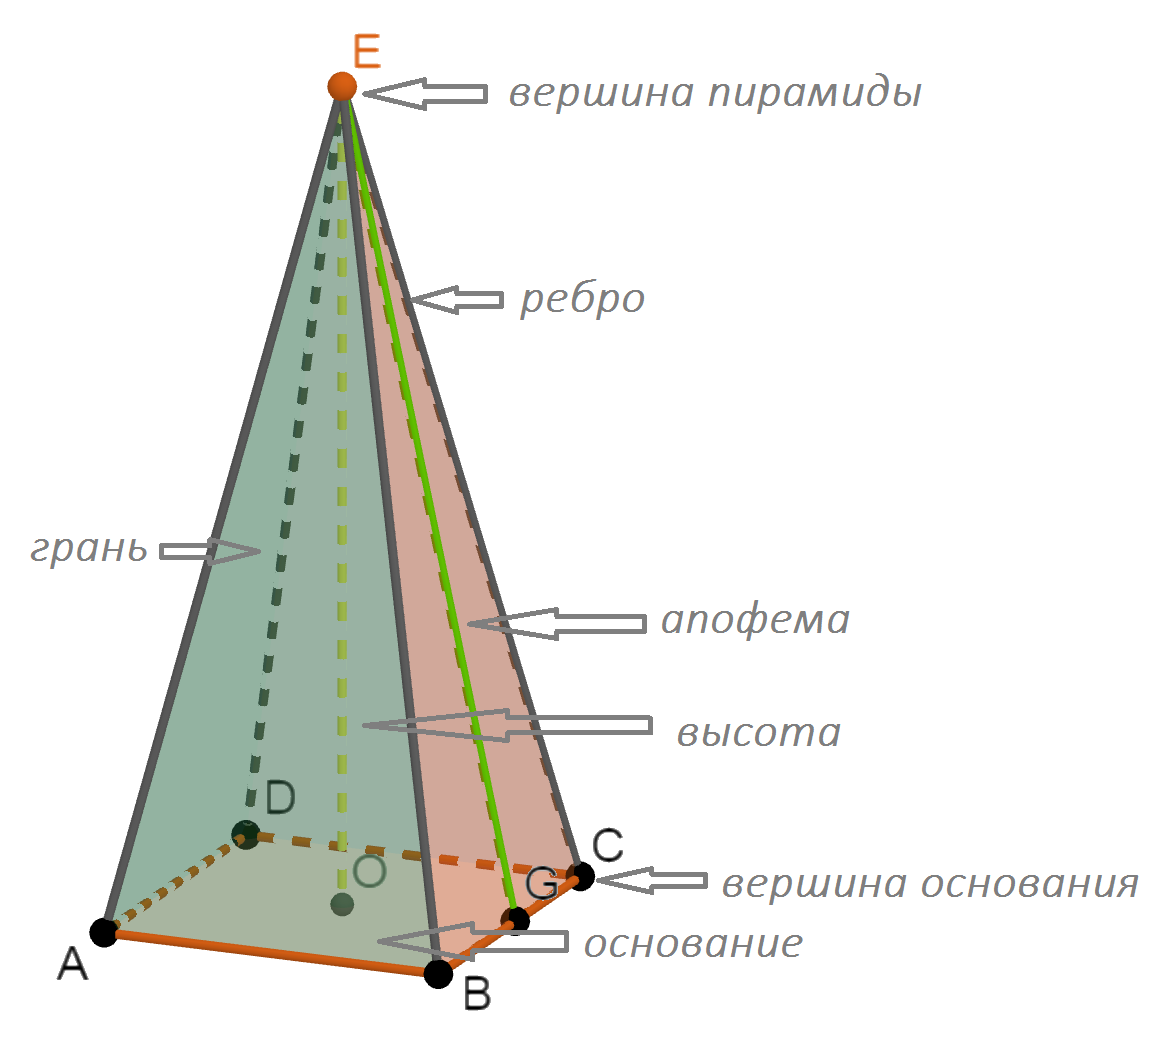 Четырехугольная пирамида с основанием ABCD, высотой OE и апофемой EG